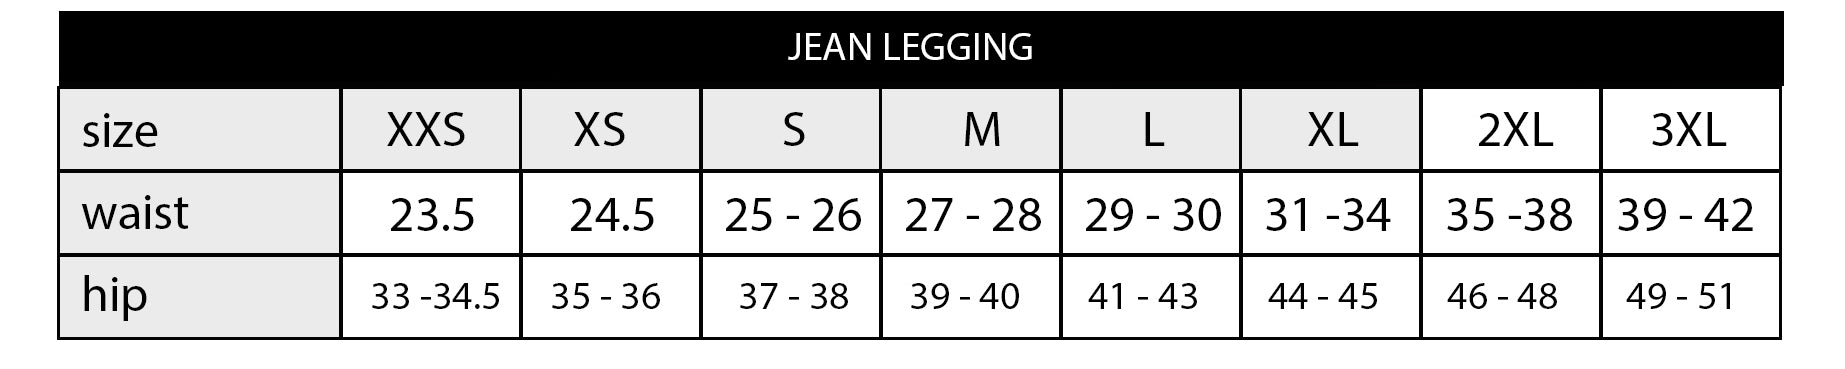 Jean Digital Grey Camo Leggings